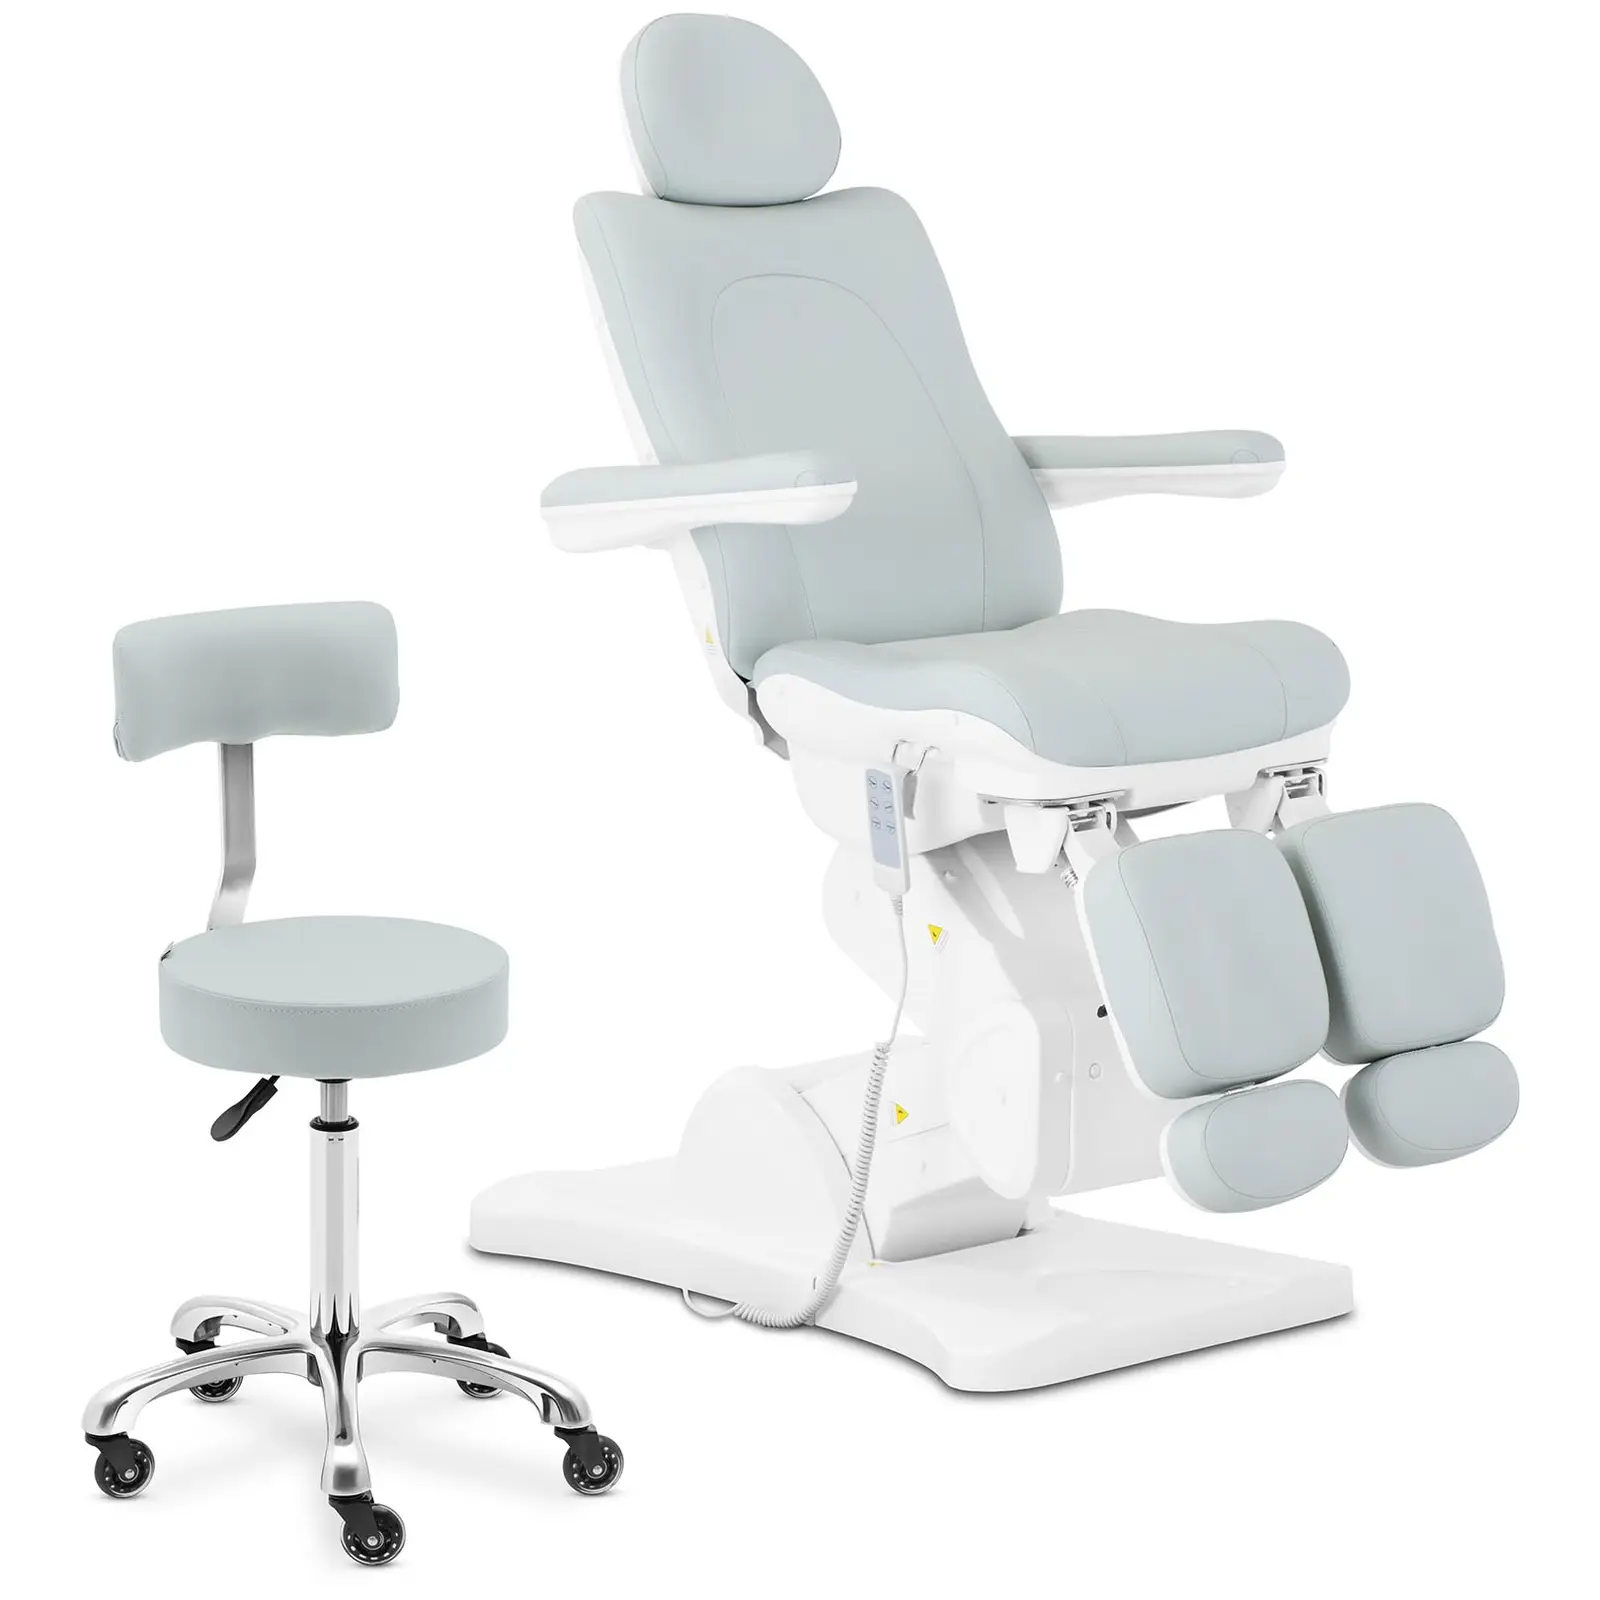 Židle a stolička na kolečkách pro péči o nohy s opěradlem - pistácie